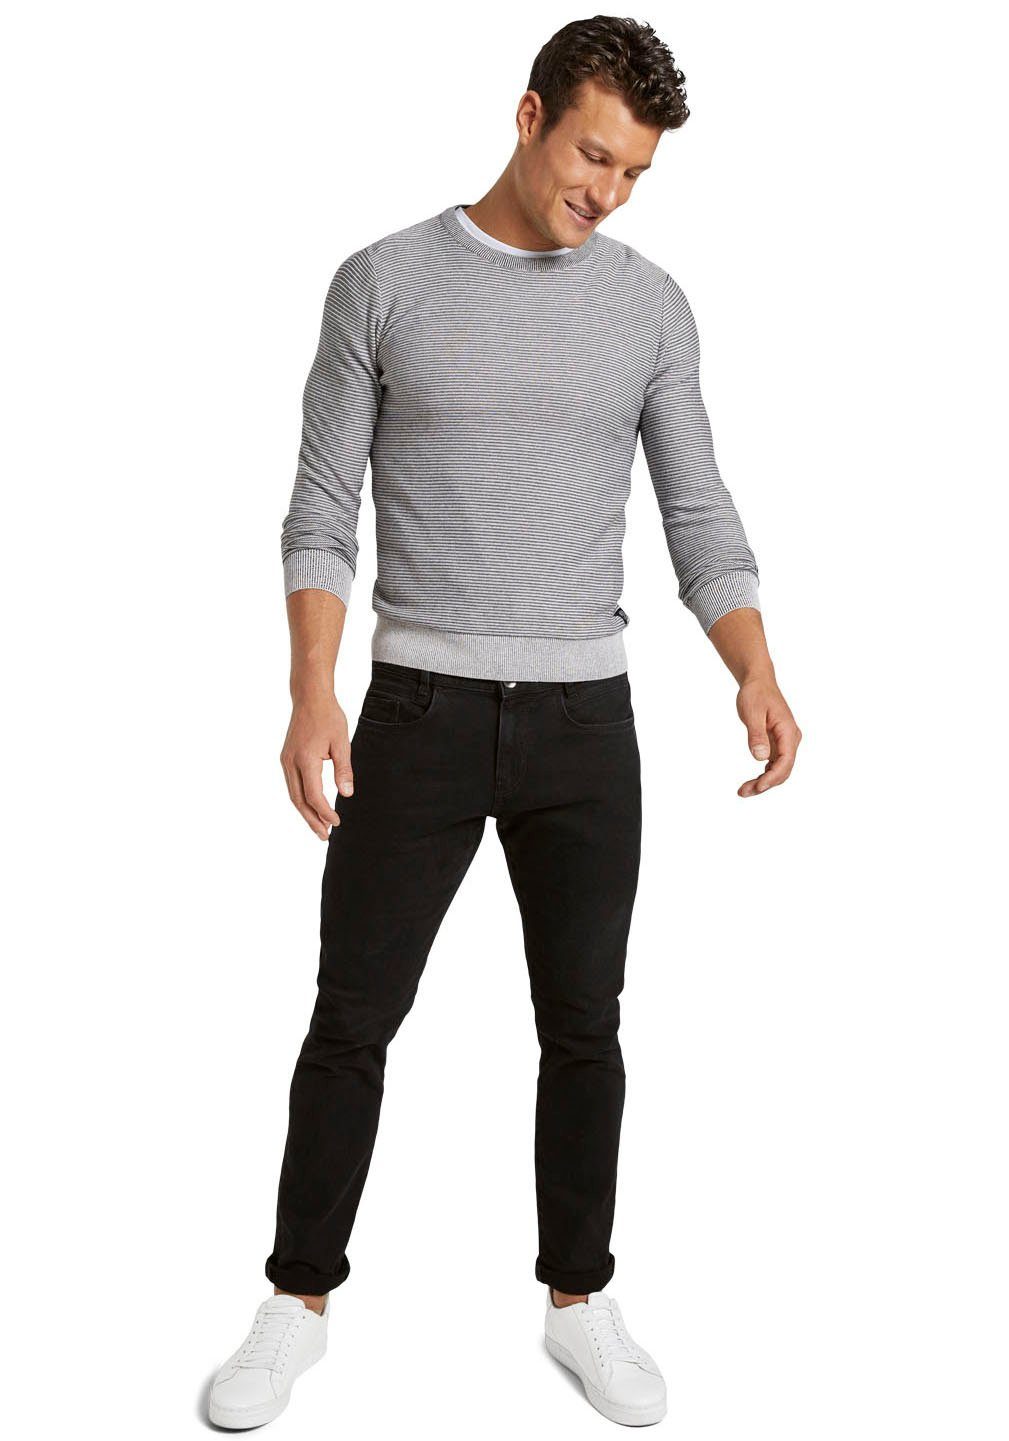 Slim-fit-Jeans TOM TROY unifarben black-denim TAILOR